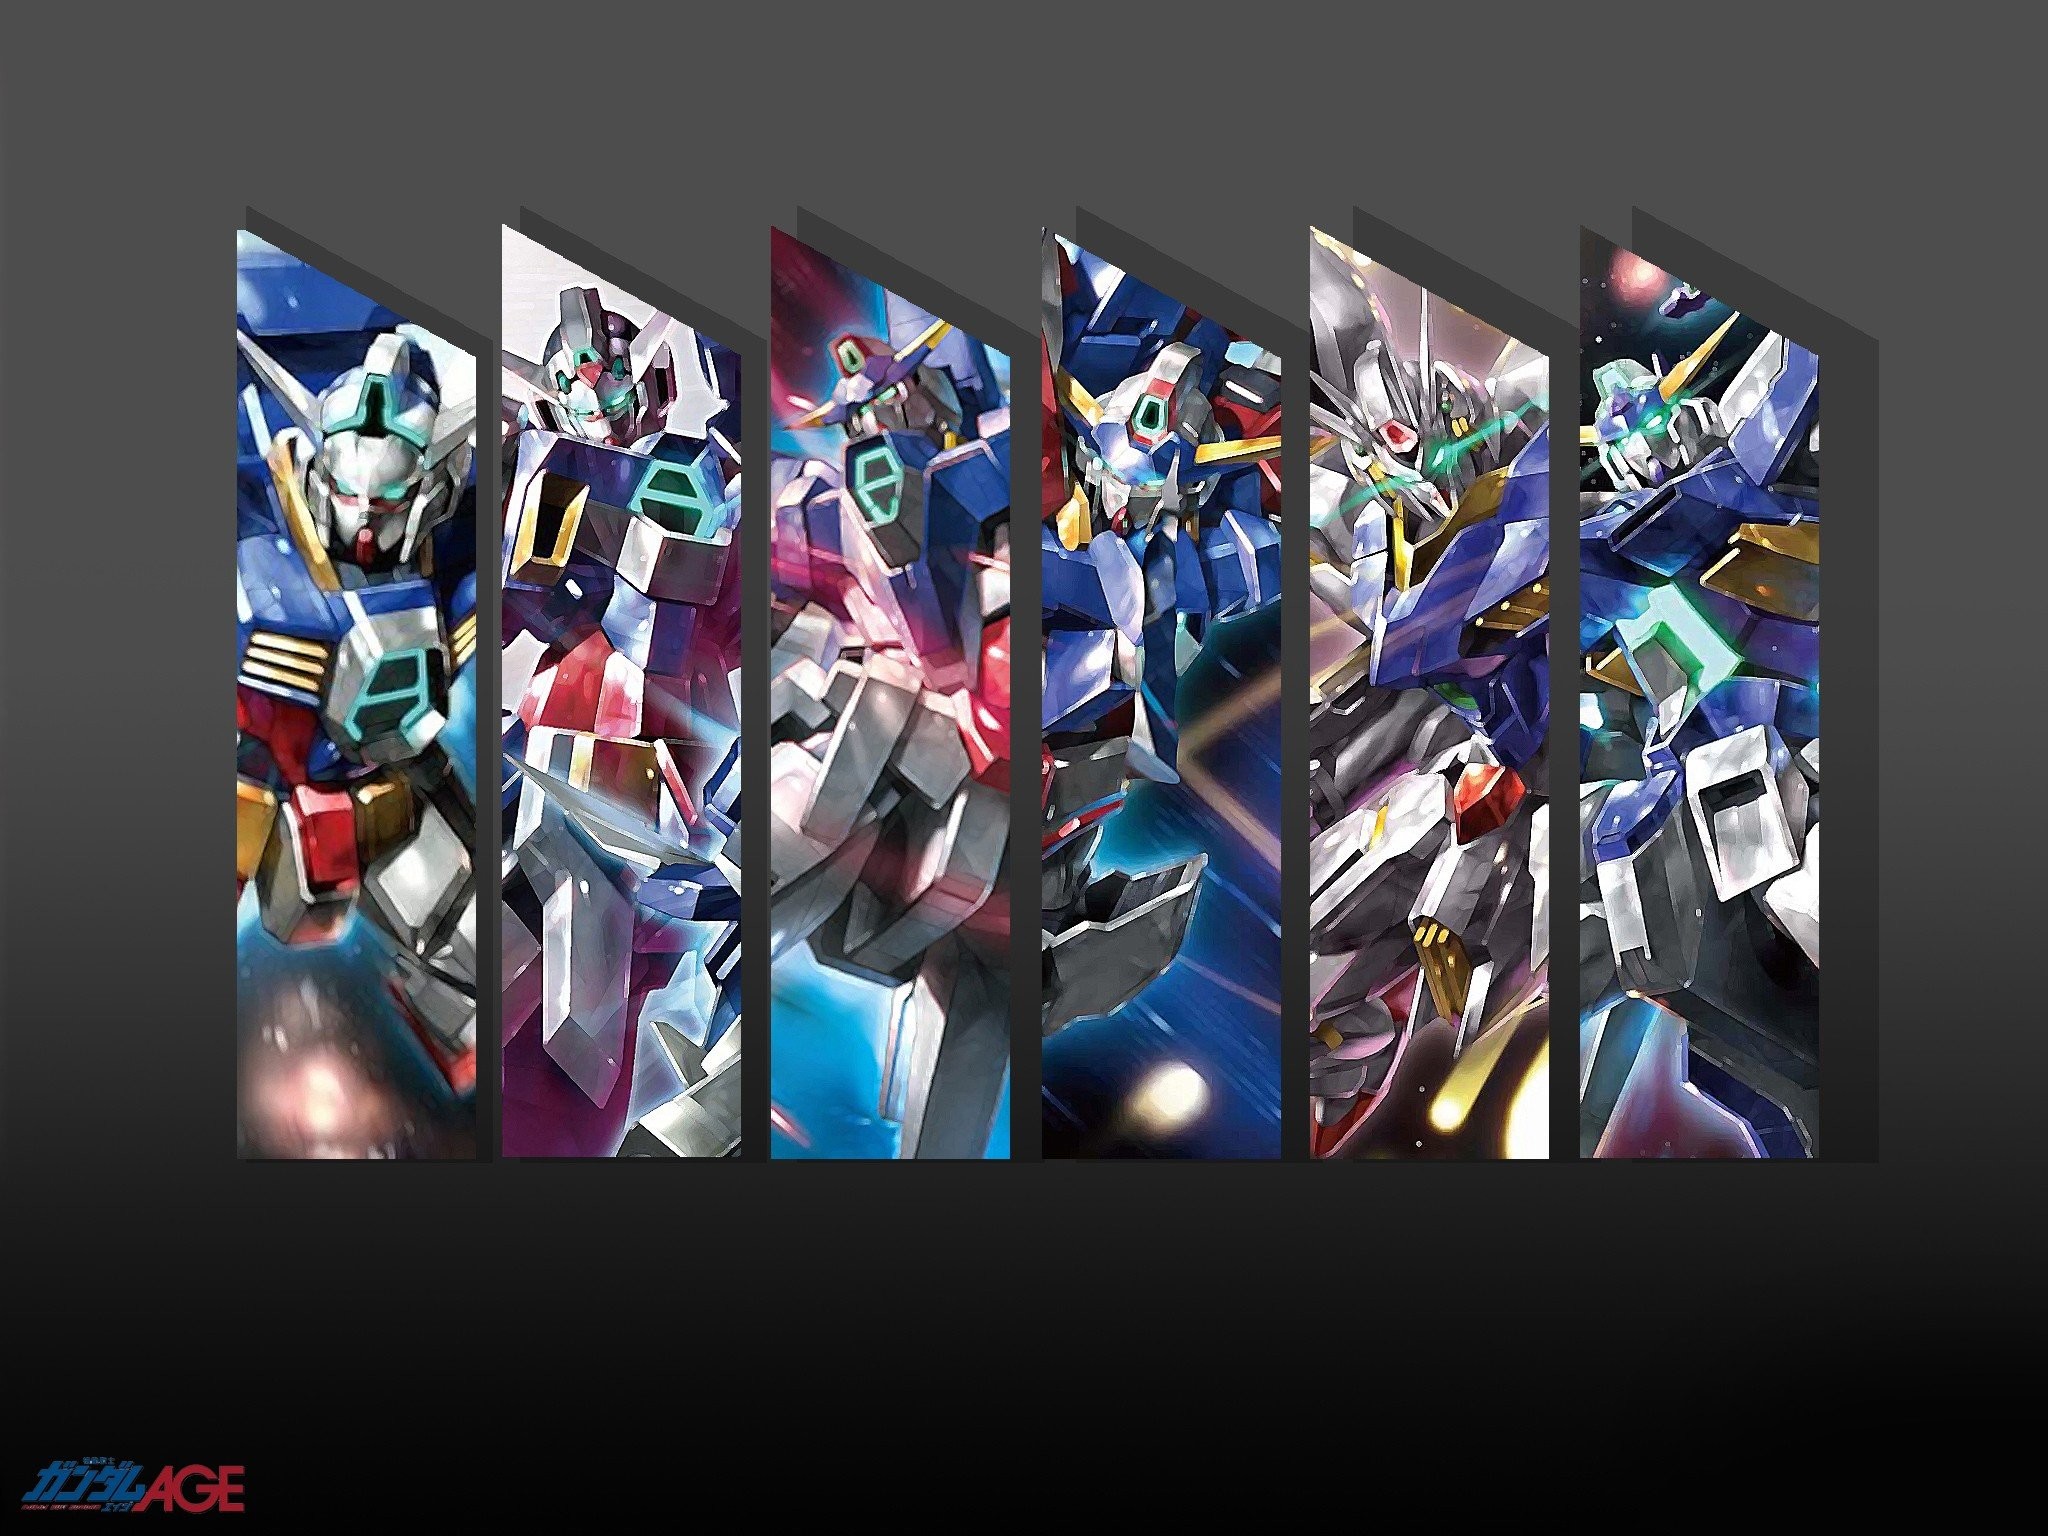 2048x1536 Gundam mecha Gundam age wallpaper background 